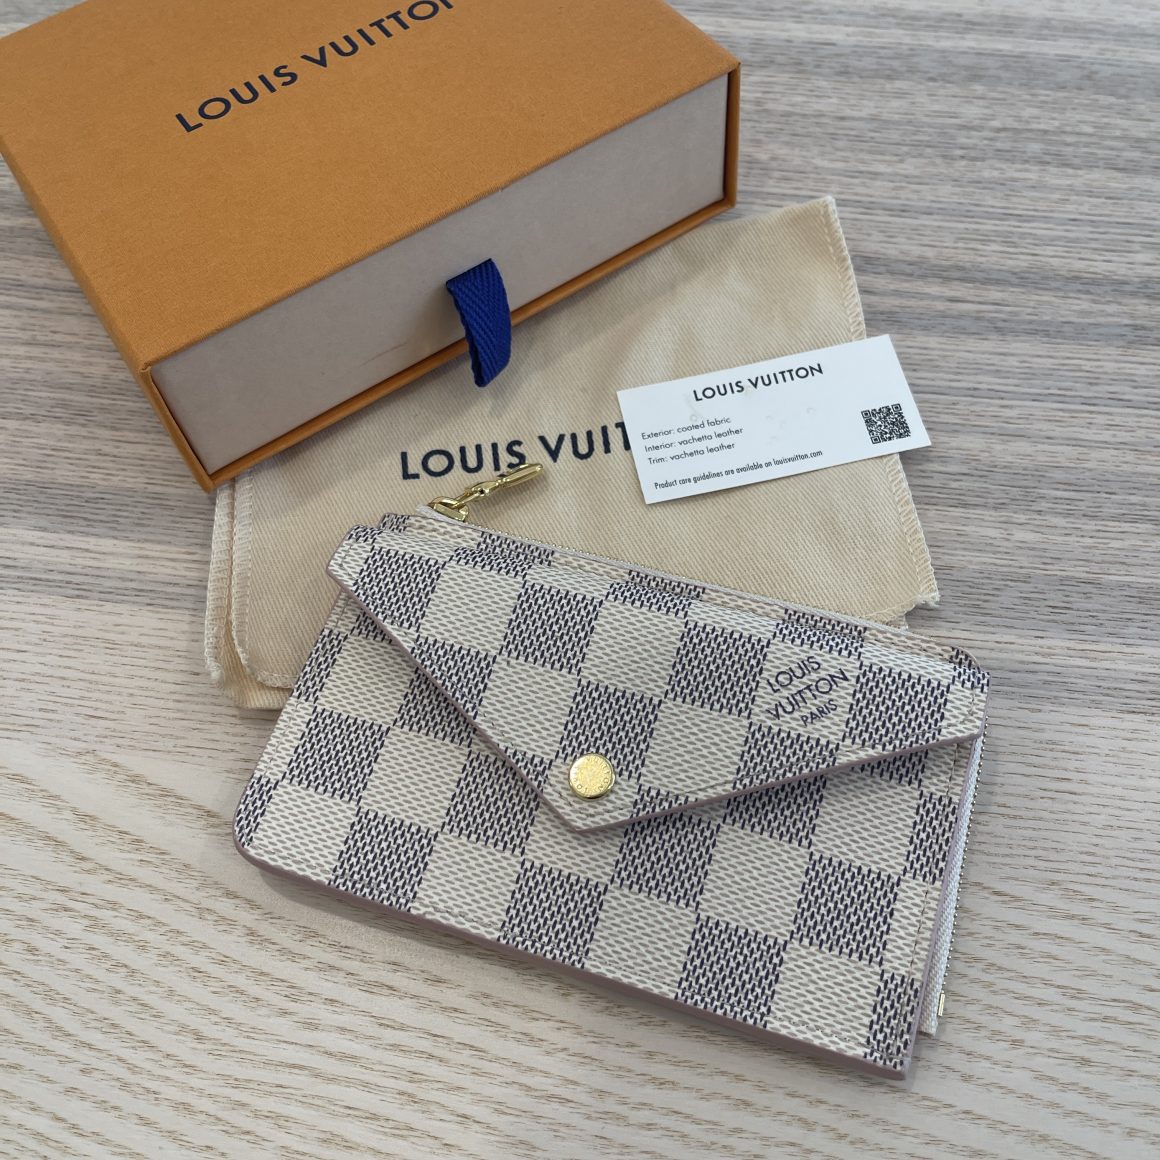 2020 NEW Louis Vuitton Damier PINK RECTO VERSO Key Coin Card